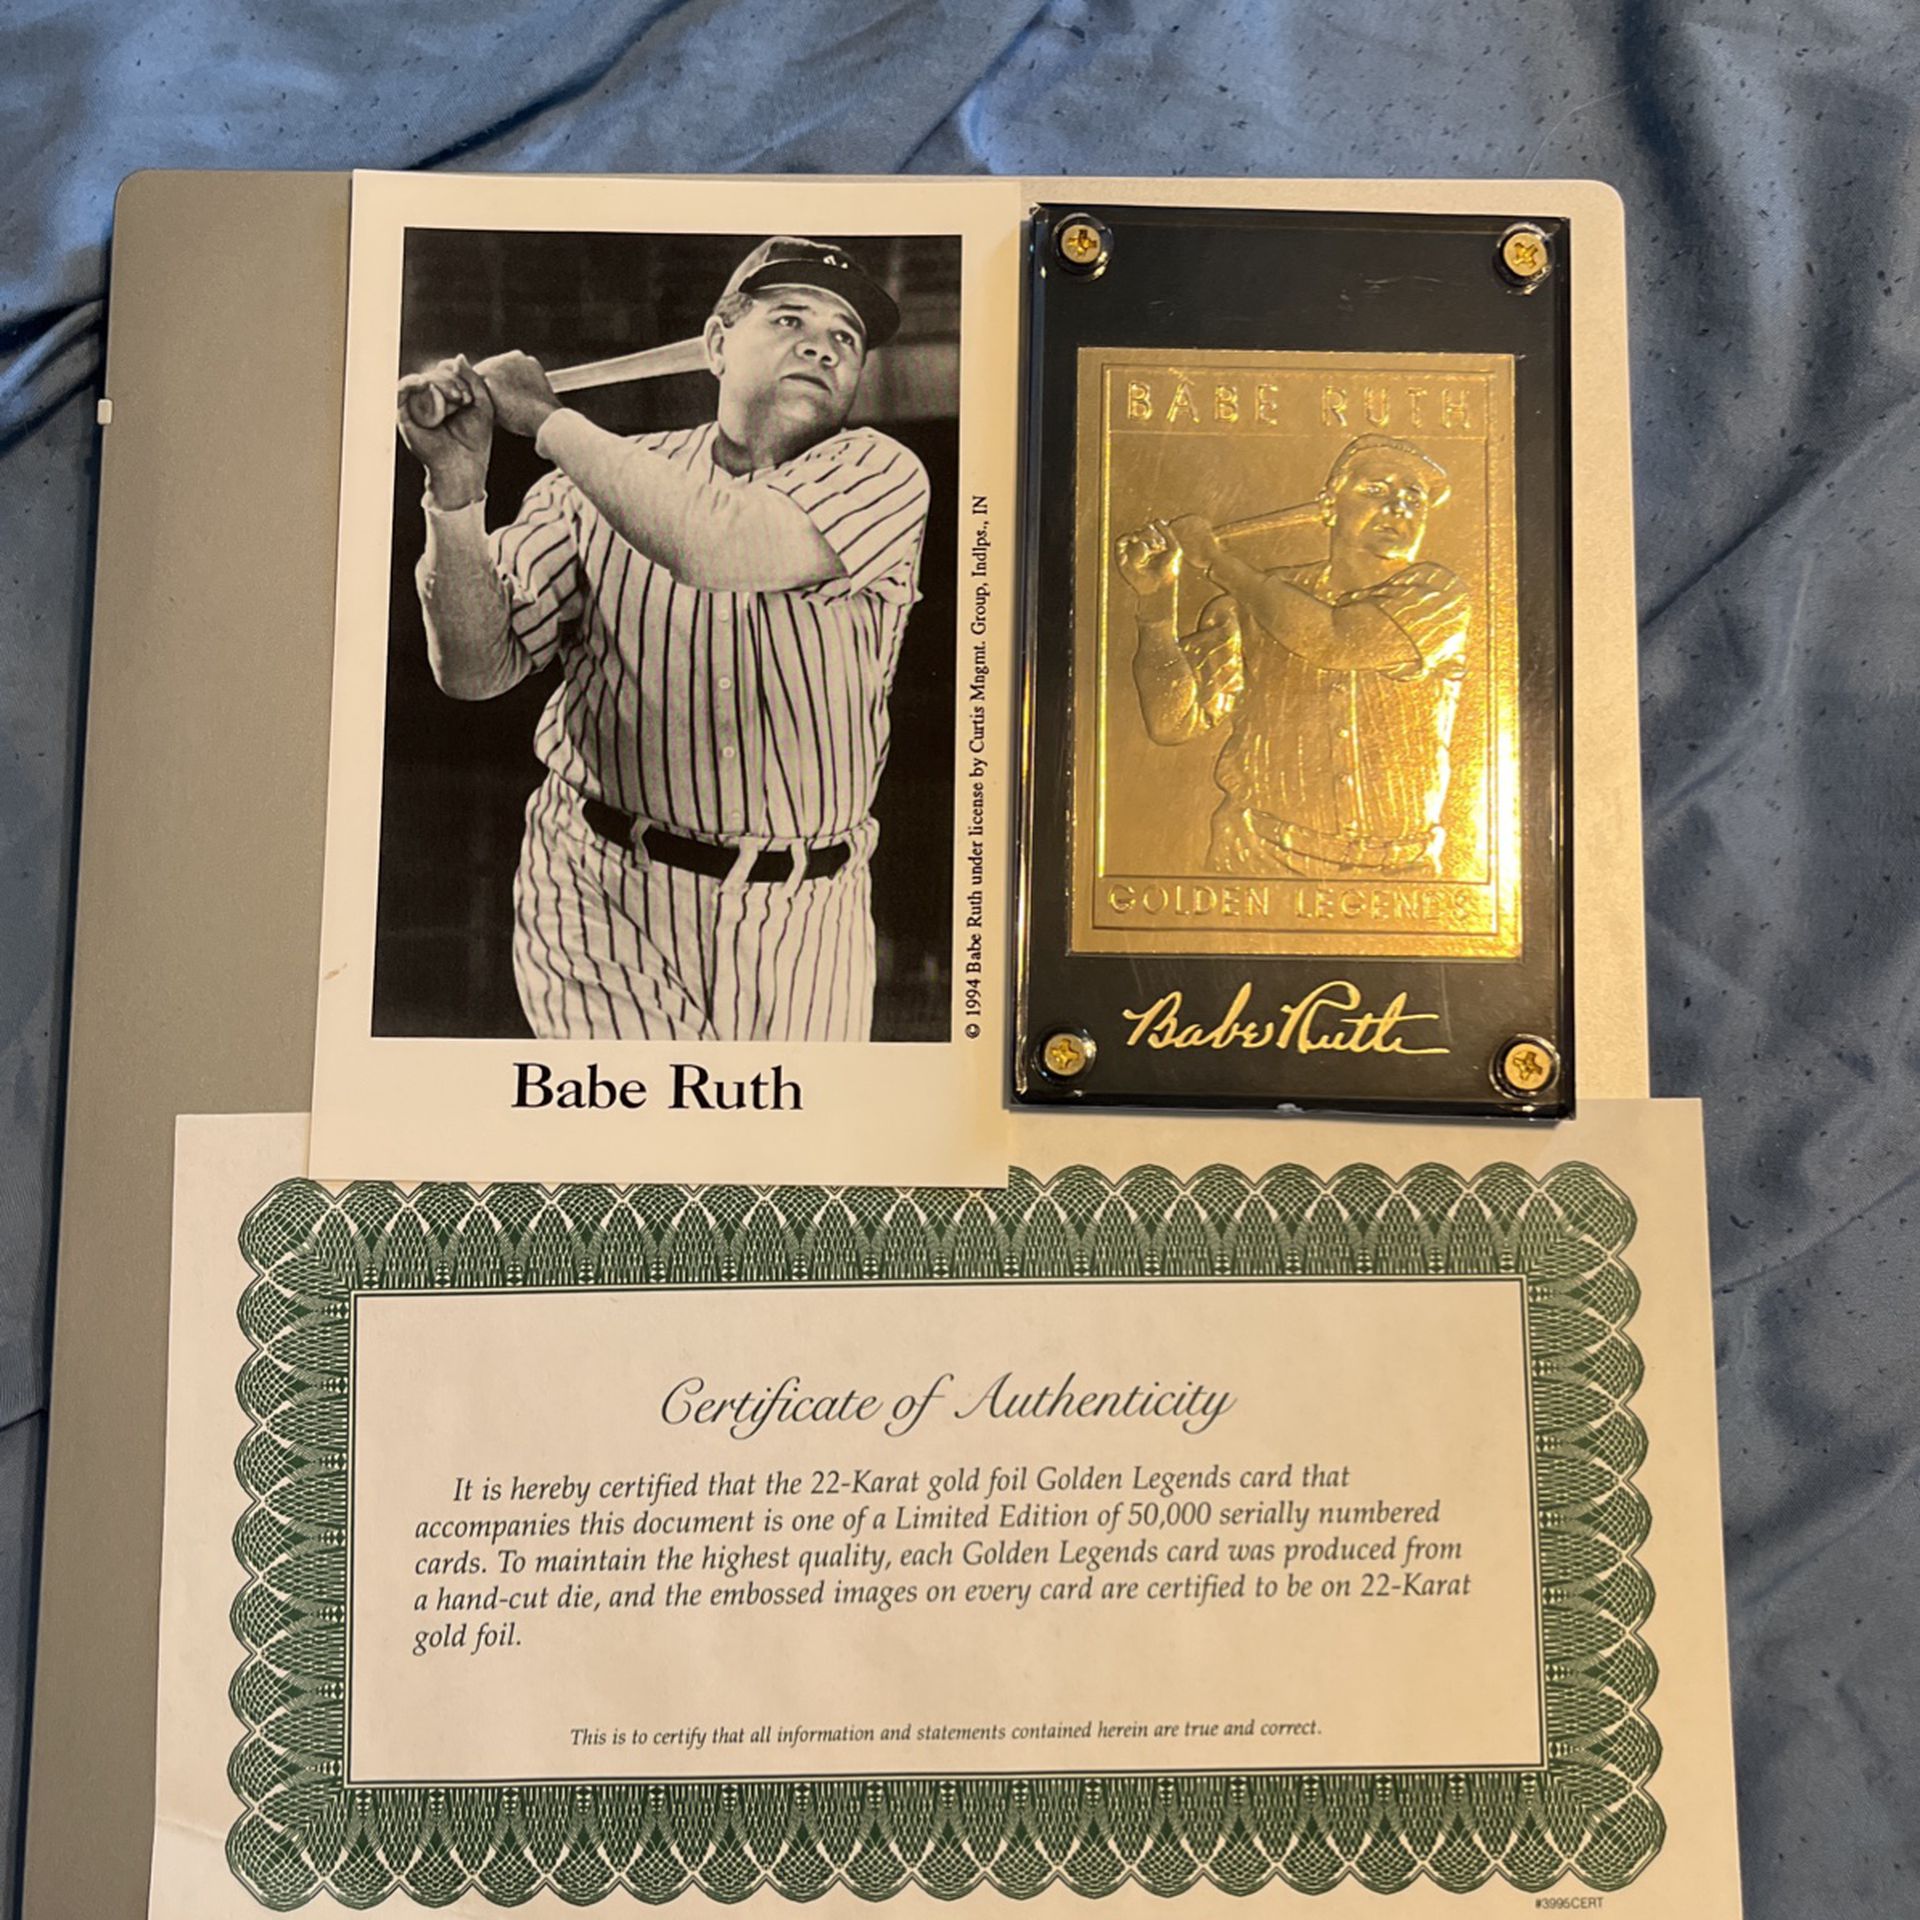 Golden Legends Of Baseball, Babe Ruth, Gold Card